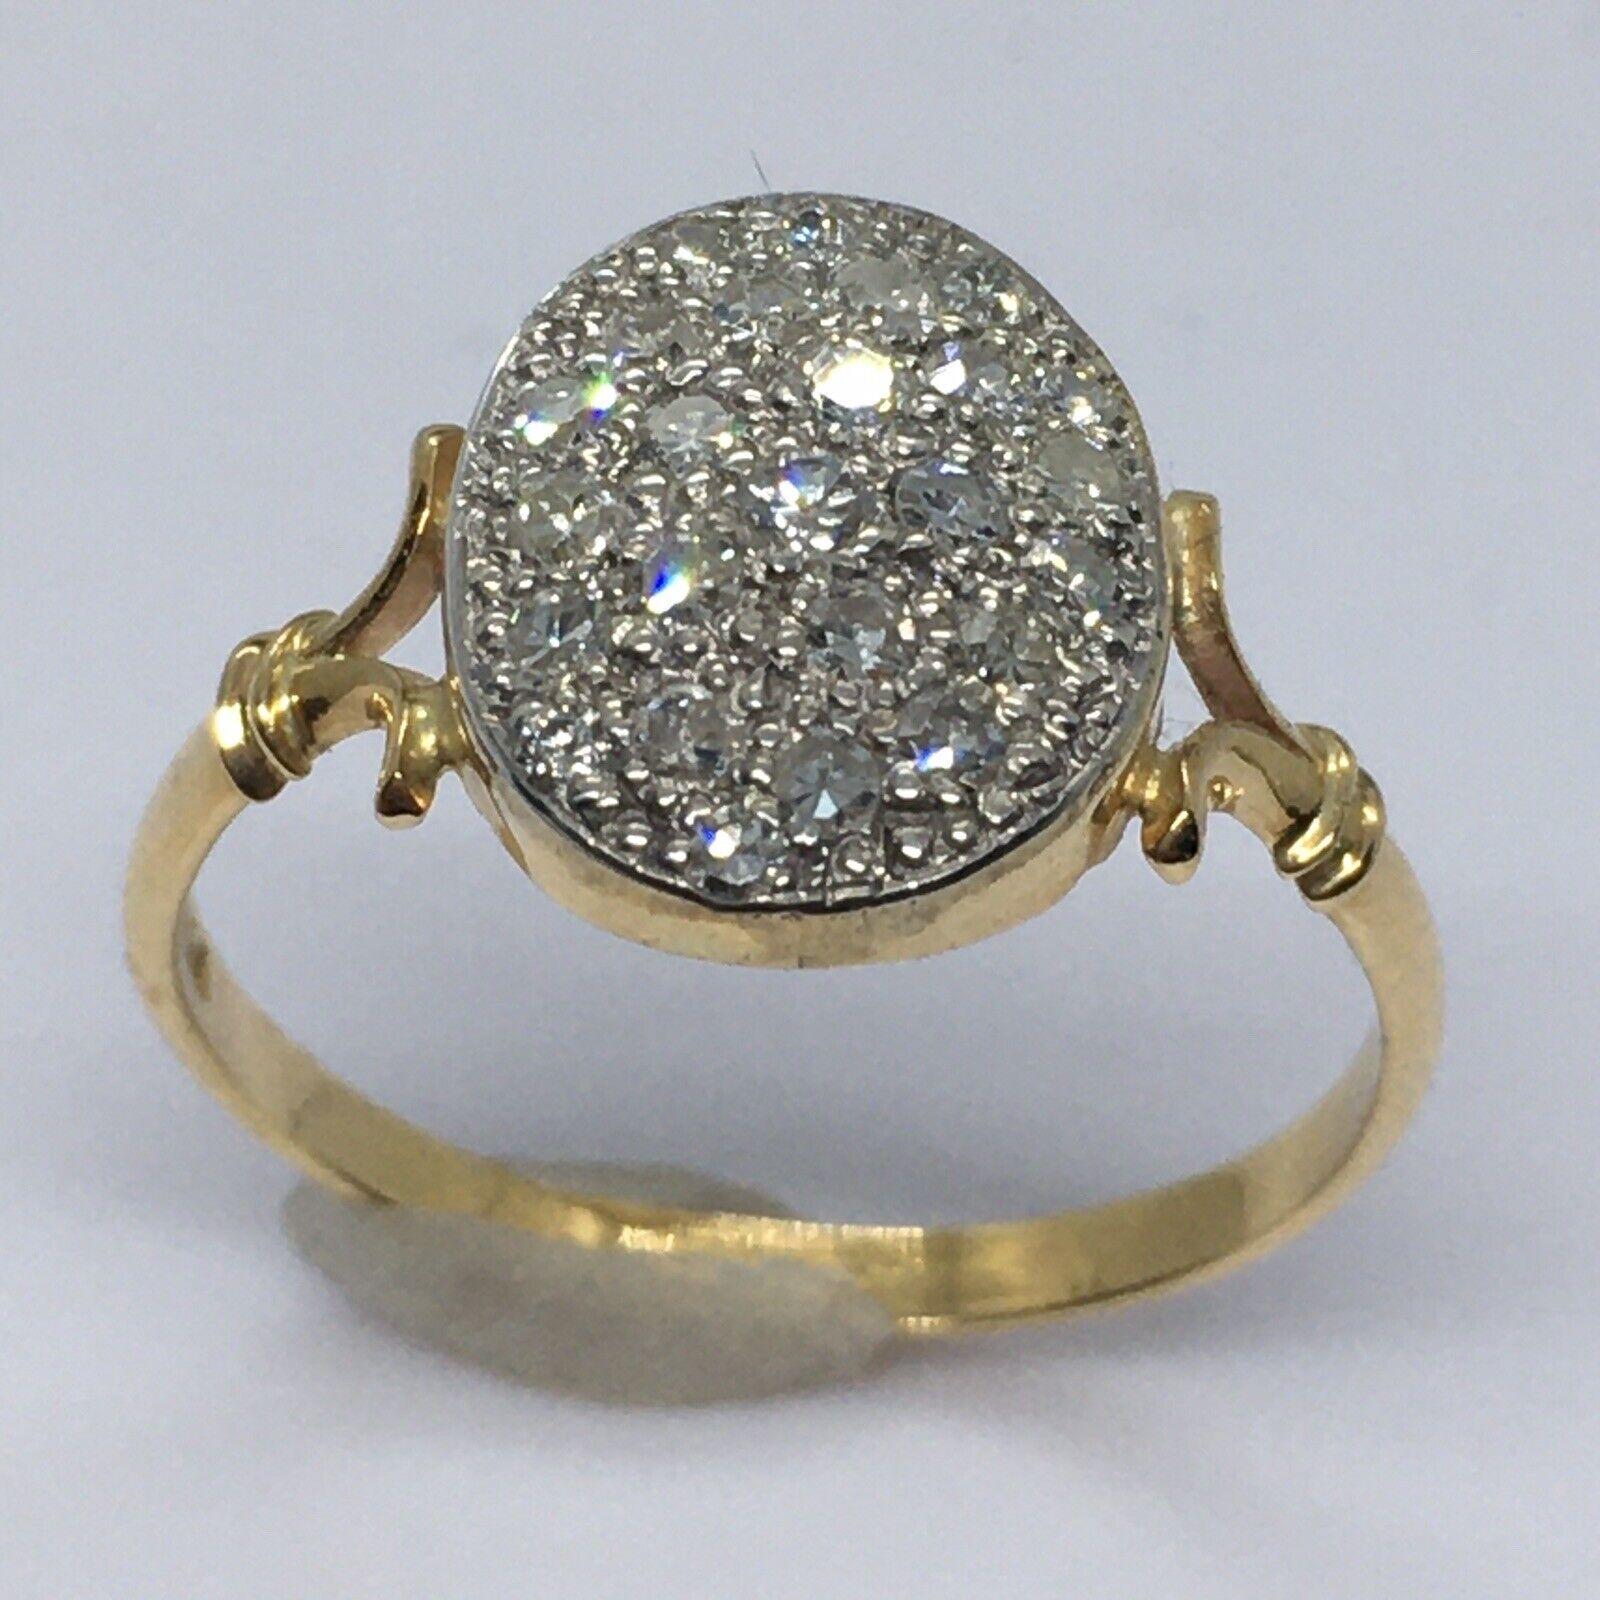 
18k Gelbgold Antik Silber Top 1/2 Karat Diamant Pave Set Ring 

100 Jahre alt
 Größe 7.5 +  etwas mehr als 7,5
Markiert 750 getestet für 18K
26 Diamanten im Einzelschliff von insgesamt 1/2 Karat
Gewichtung 2,5 Gramm 
1/2 Zoll Spannweite auf der